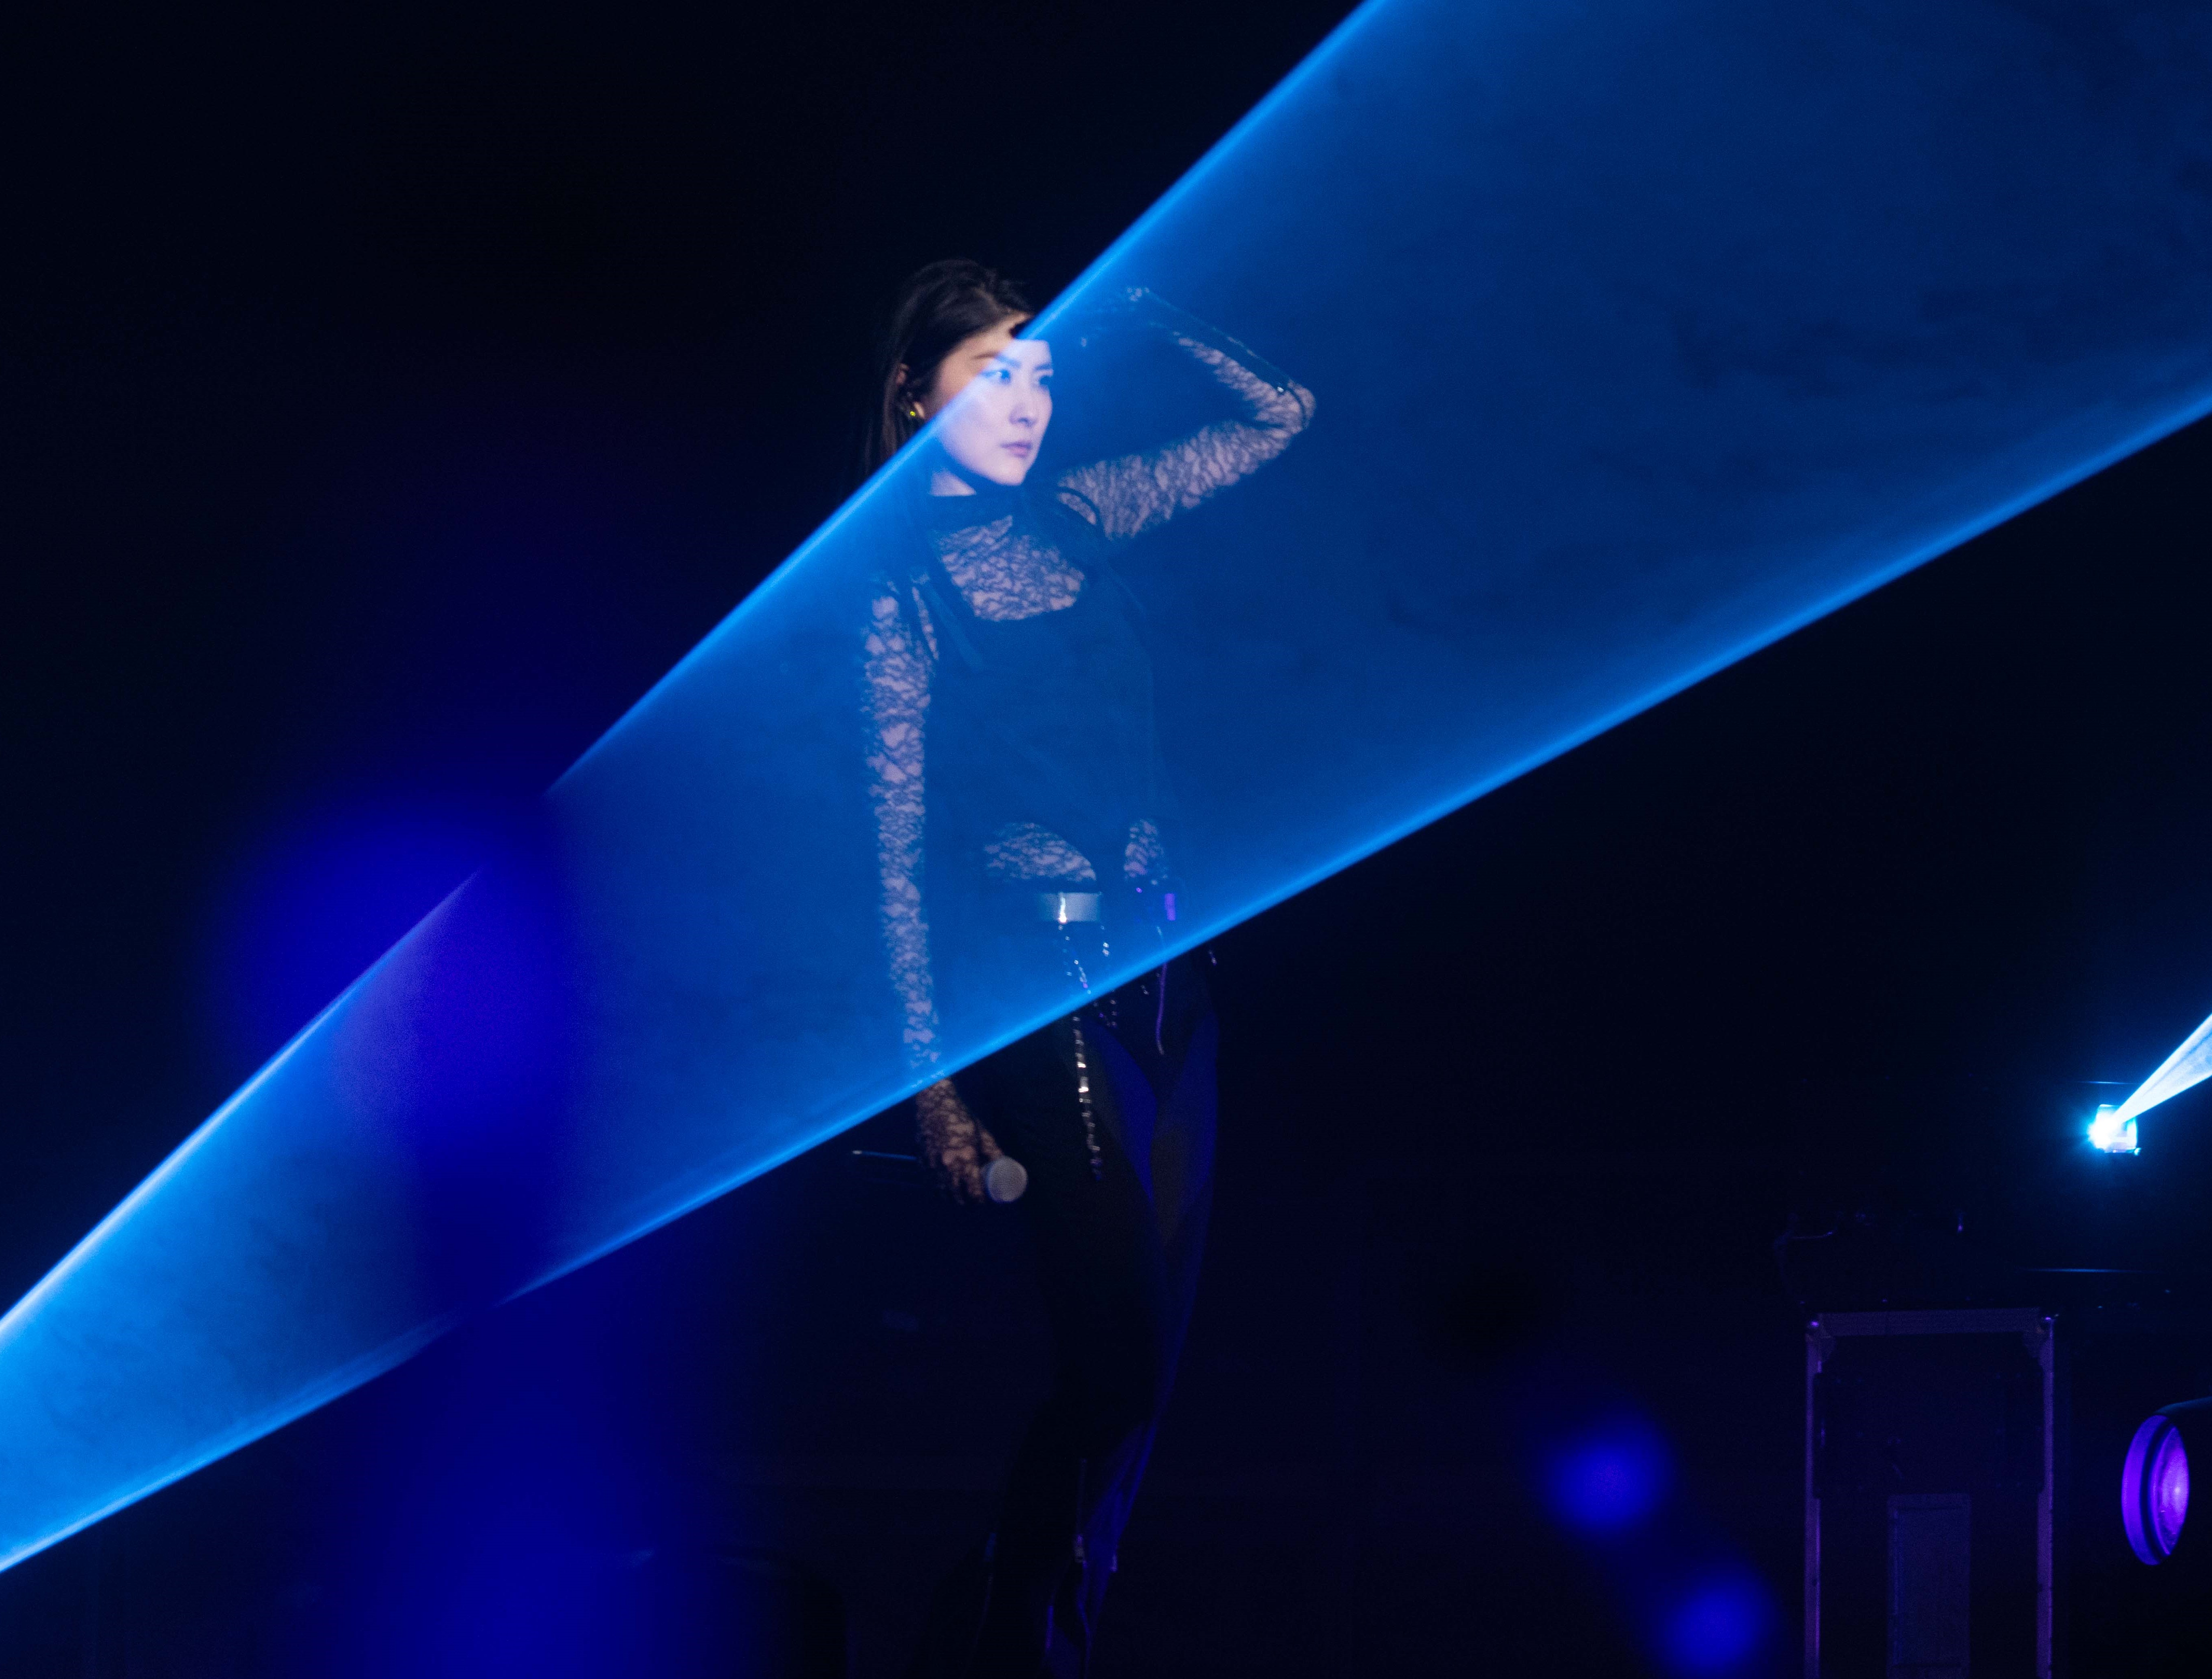 陳慧琳以新造型在演唱會上首唱新歌〈謝謝你陪我那麼久〉。圖/環球音樂提供